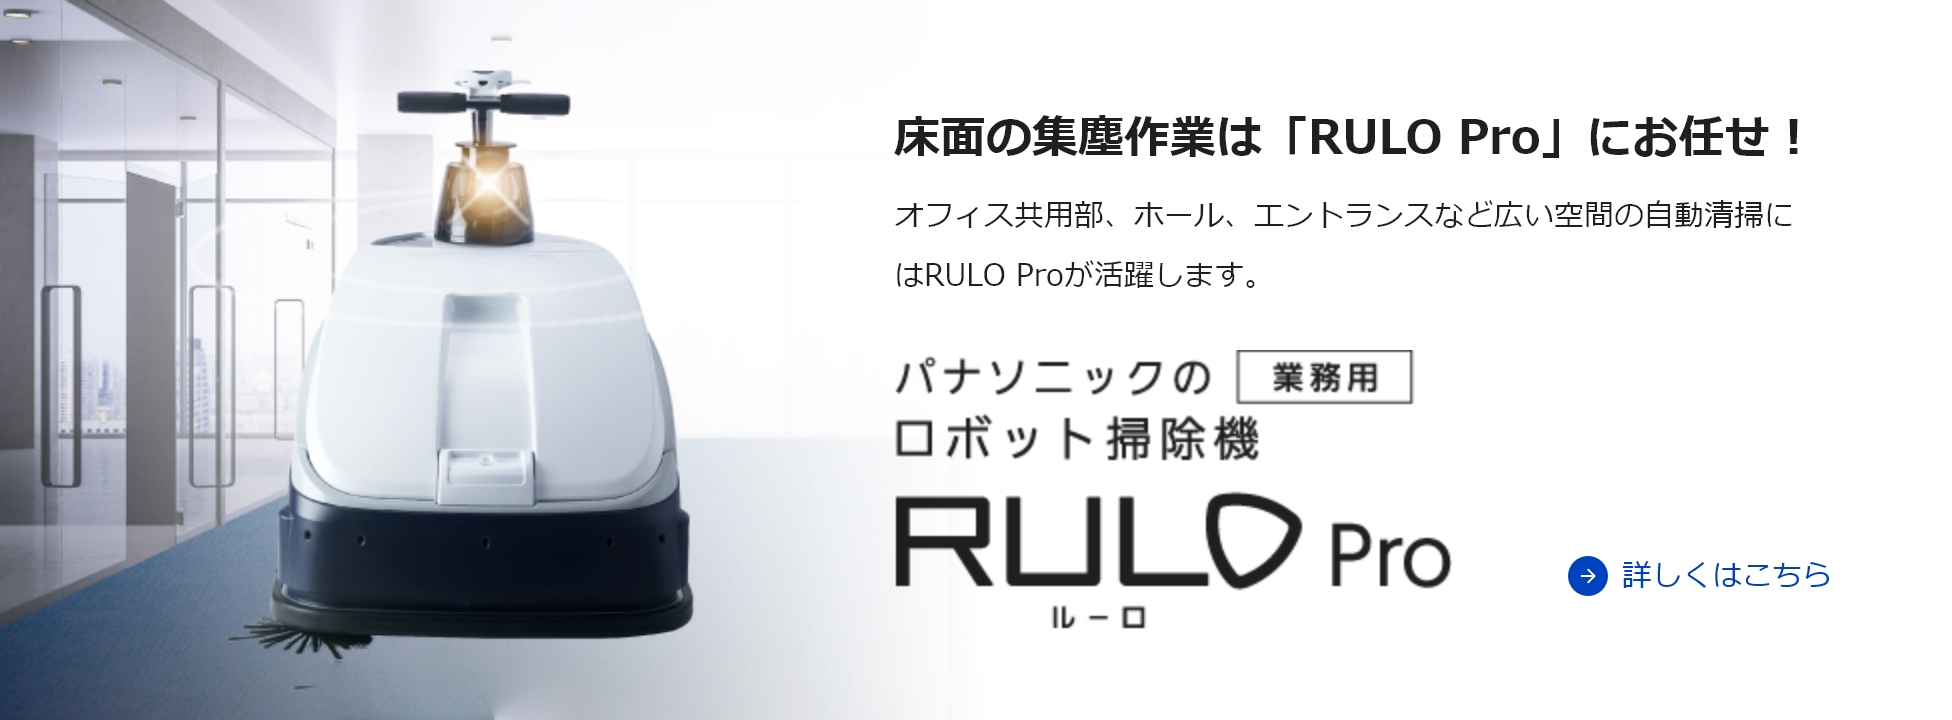 床面の集塵作業は「RULO Pro」にお任せ！ オフィス共用部、ホール、エントランスなど広い空間の自動清掃にはRULO Proが活躍します。詳しくはこちら